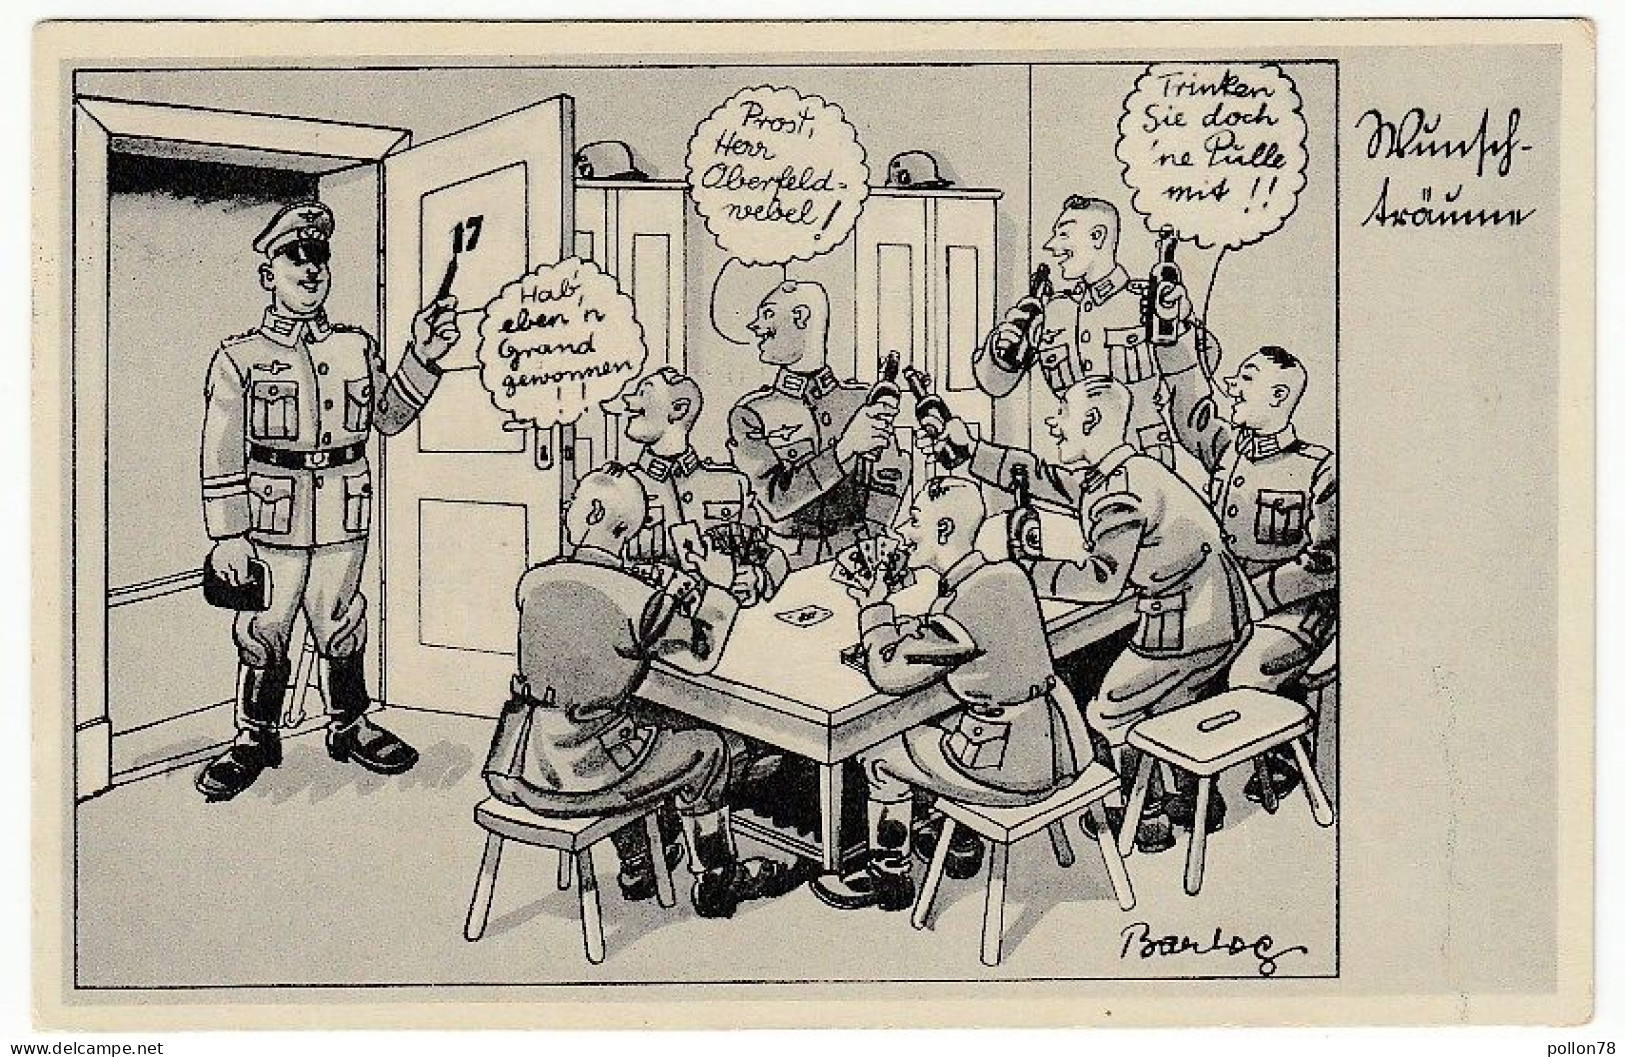 MILITARI - UMORISTICA TEDESCA - CAMERA DEI DESIDERI - 1939 - Vedi Firma Illustratore - BARLOG ? - Vedi Retro - F.p. - Humour